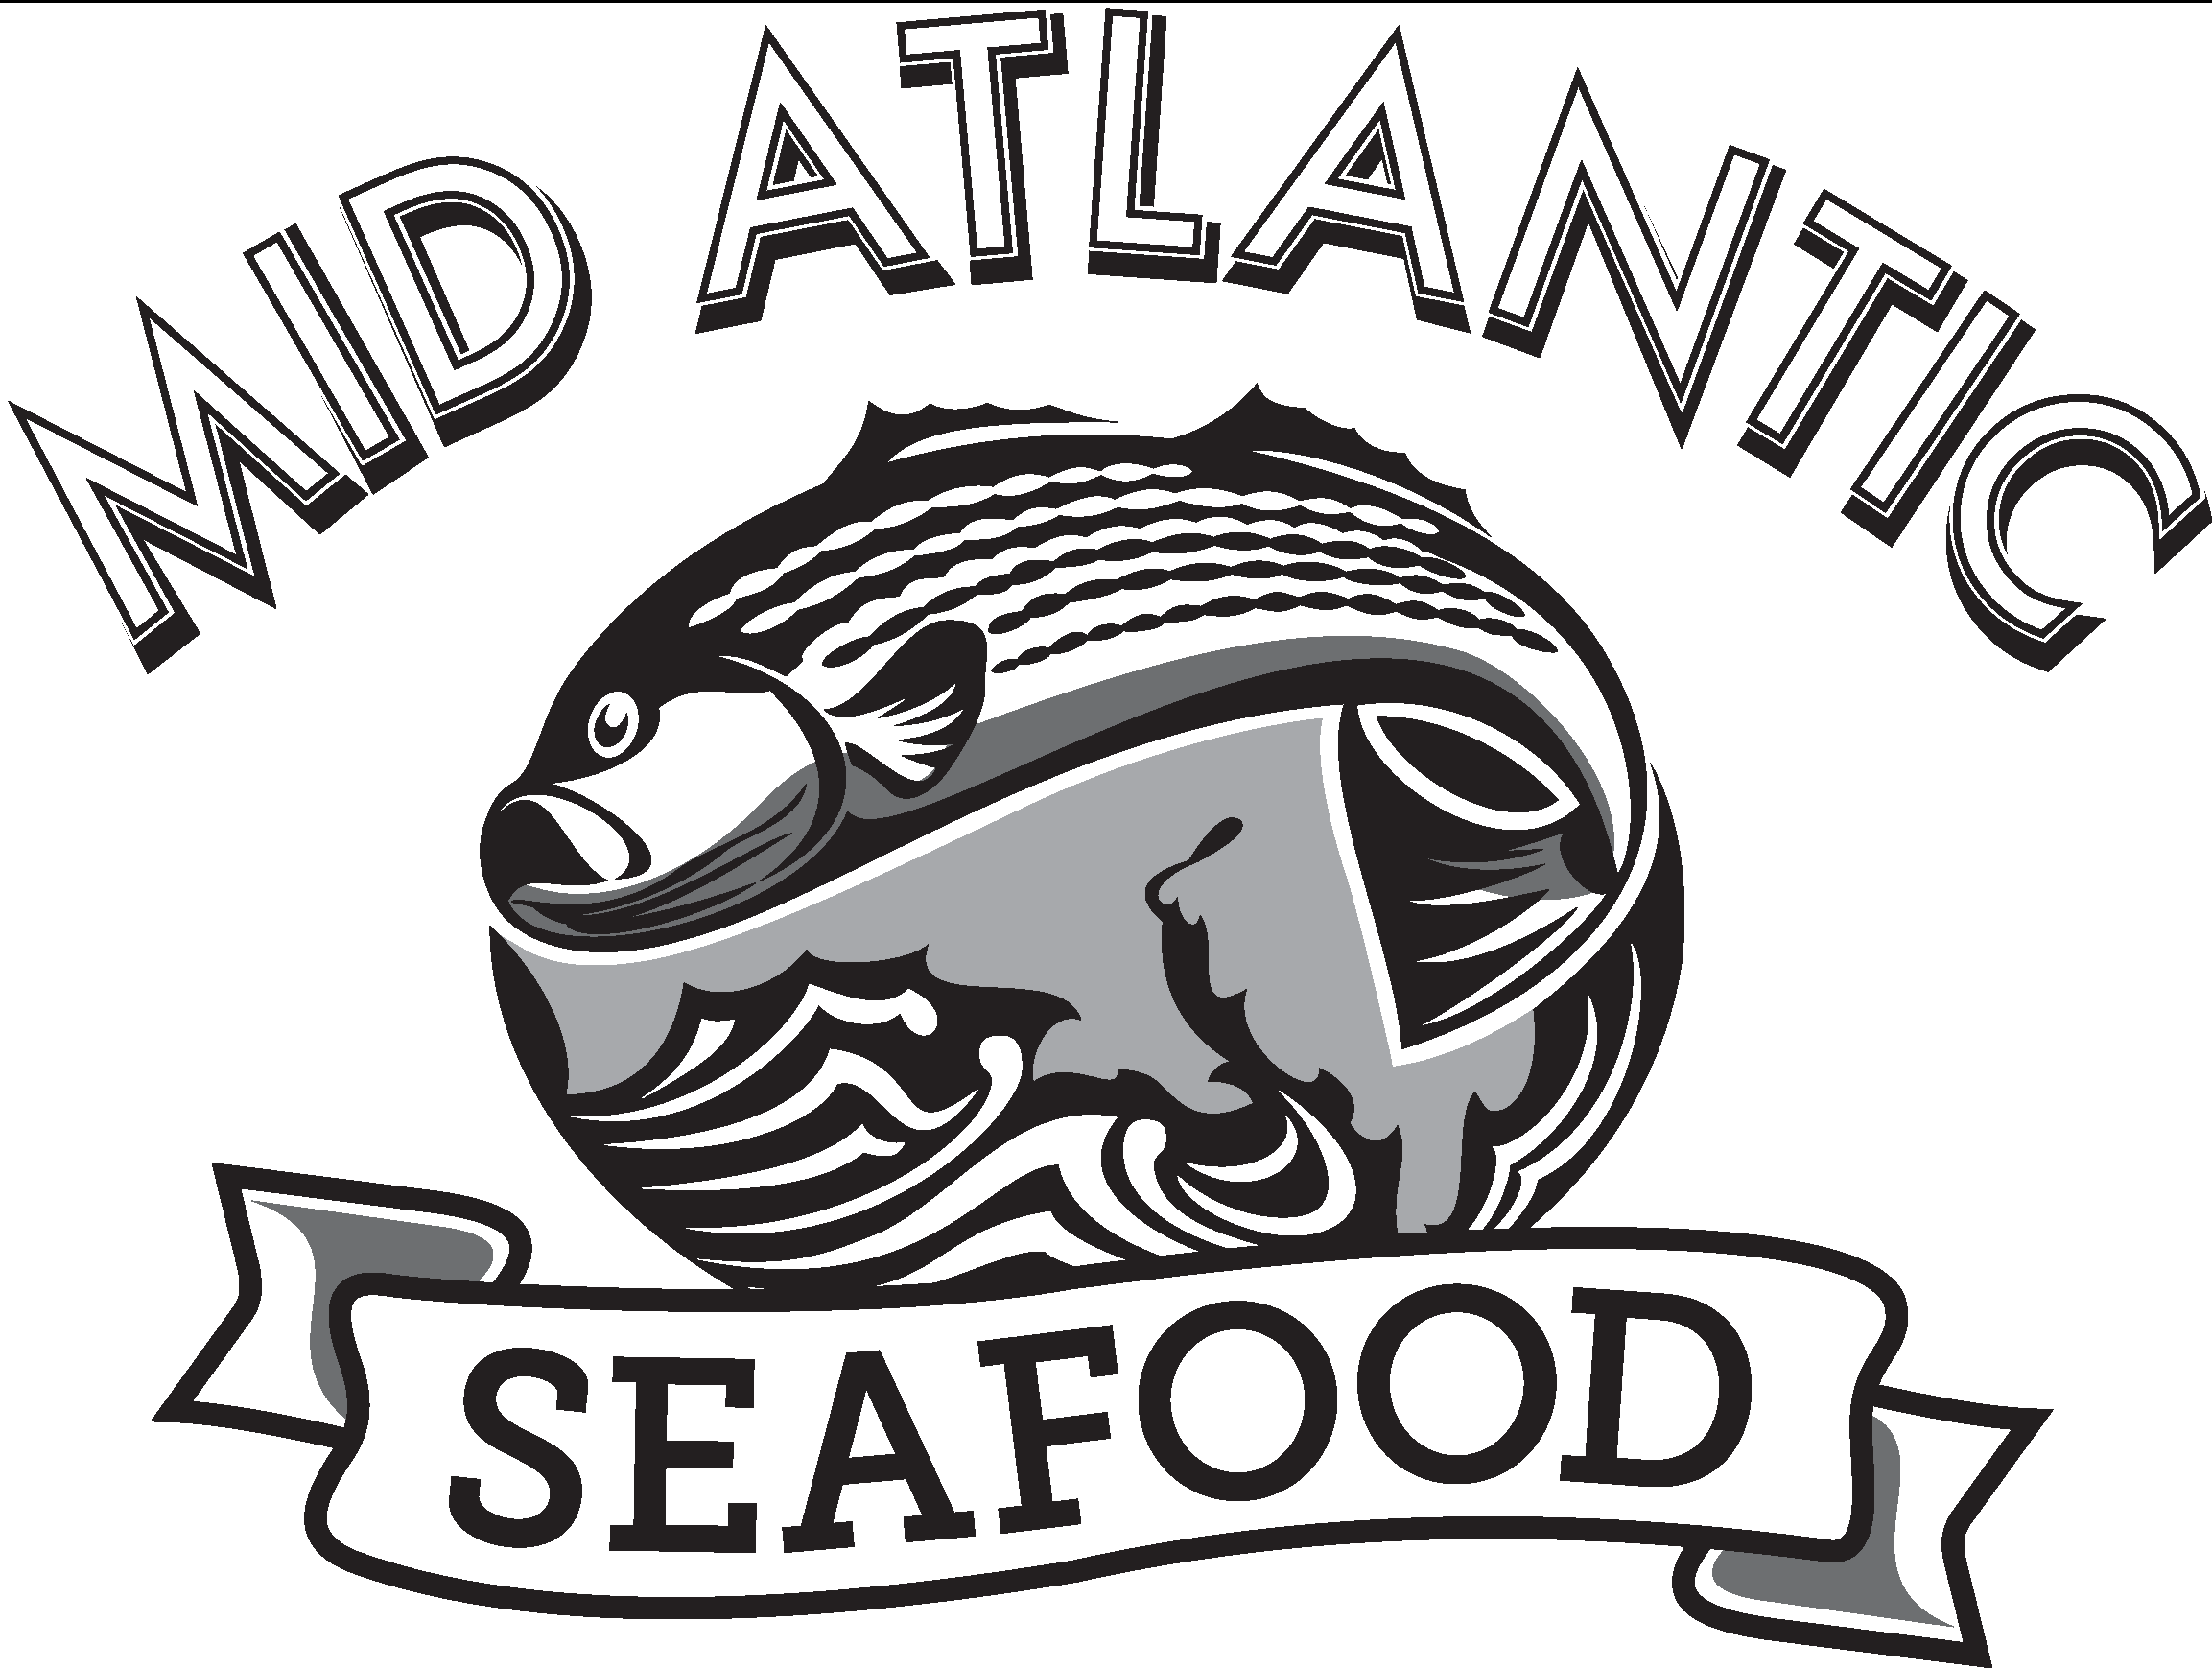 Mid-Atlantic Seafood Restaurant